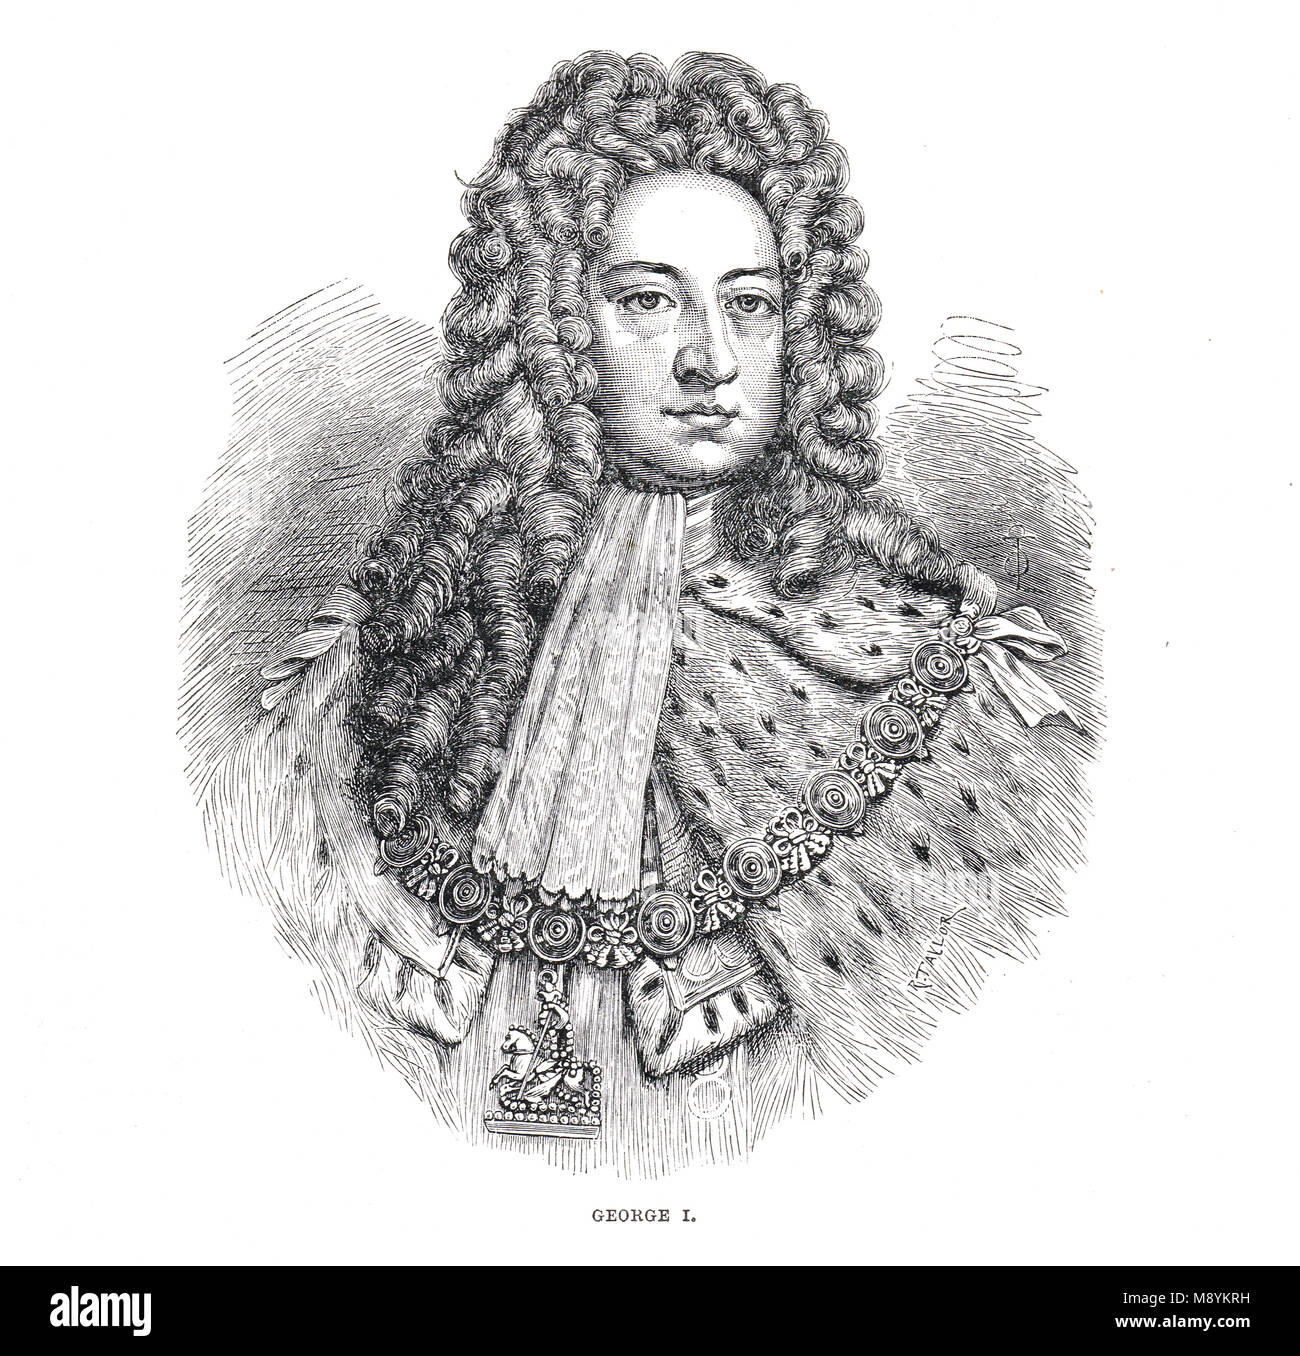 Re Giorgio I di del Regno Unito di Gran Bretagna e Irlanda, regnò 1714-1727, primo monarca della Casa di Hannover Foto Stock